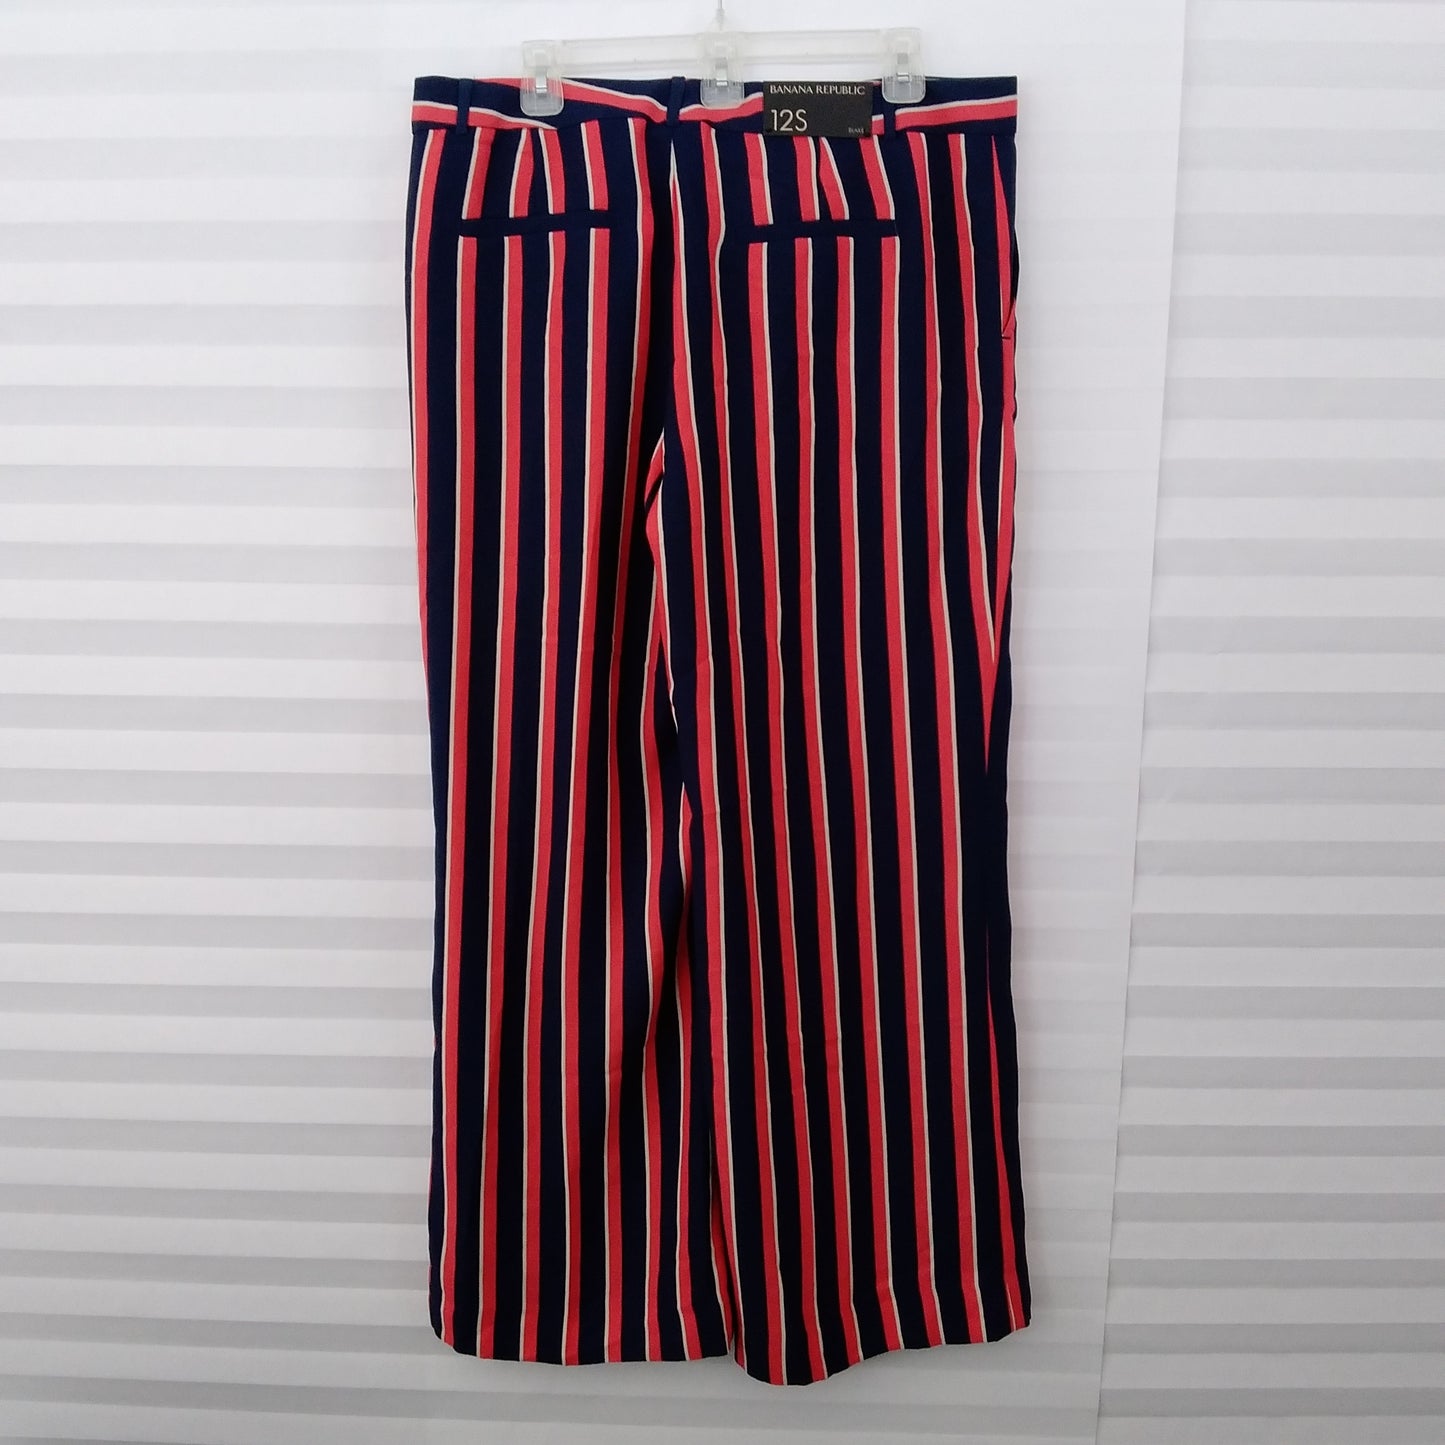 NWT - Banana Republic Red/White/Blue Striped Blake Wide Leg Pants - Size: 12S